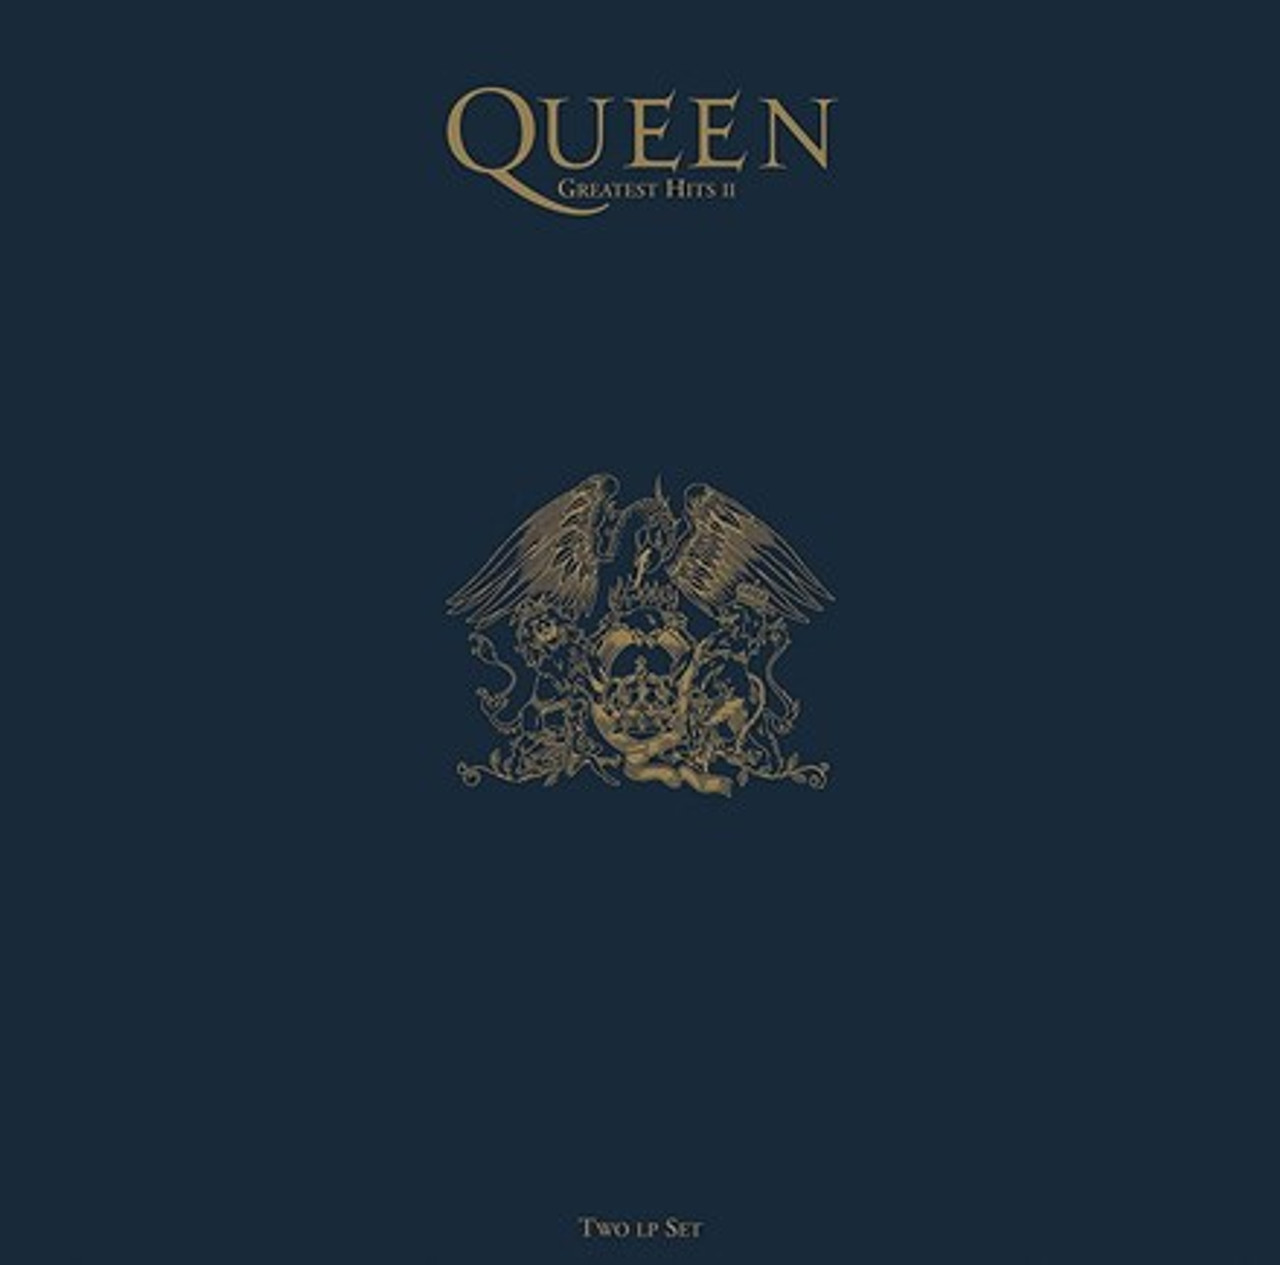 Queen - Greatest Hits II (180g Vinyl 2LP) - Music Direct